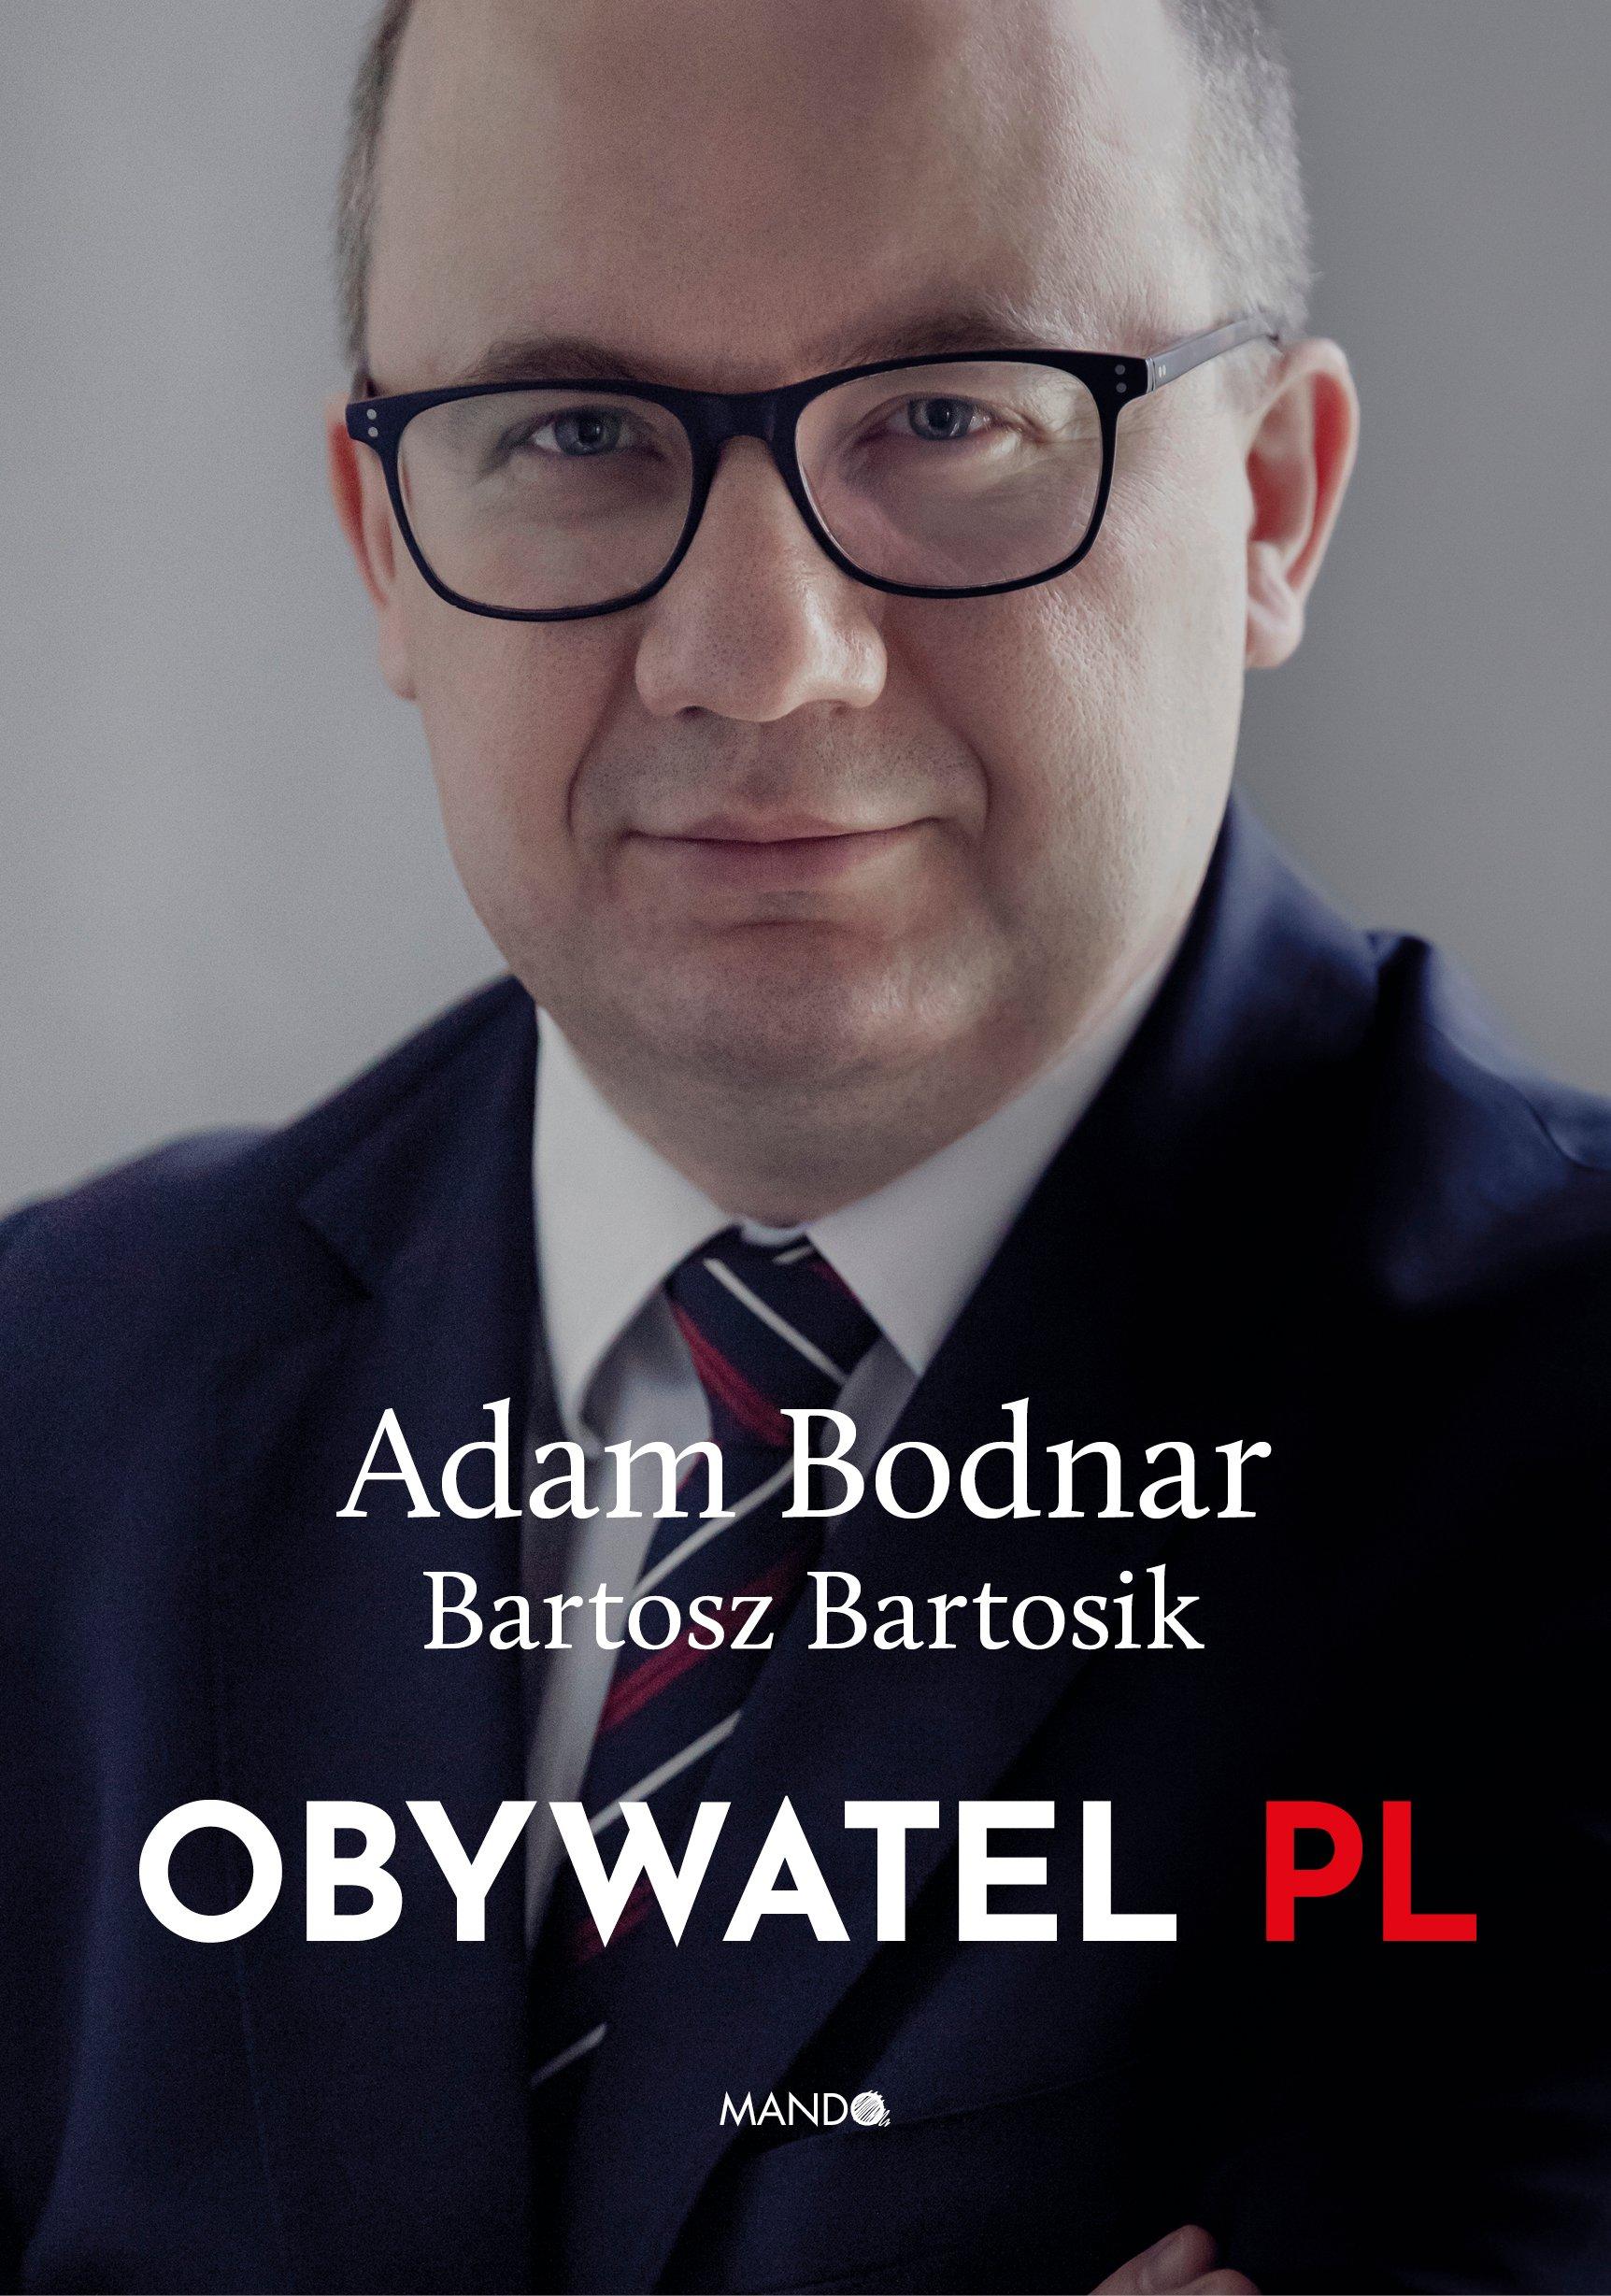 "Obywatel PL" - okładka wywiadu-rzeki z RPO Adamem Bodnarem.